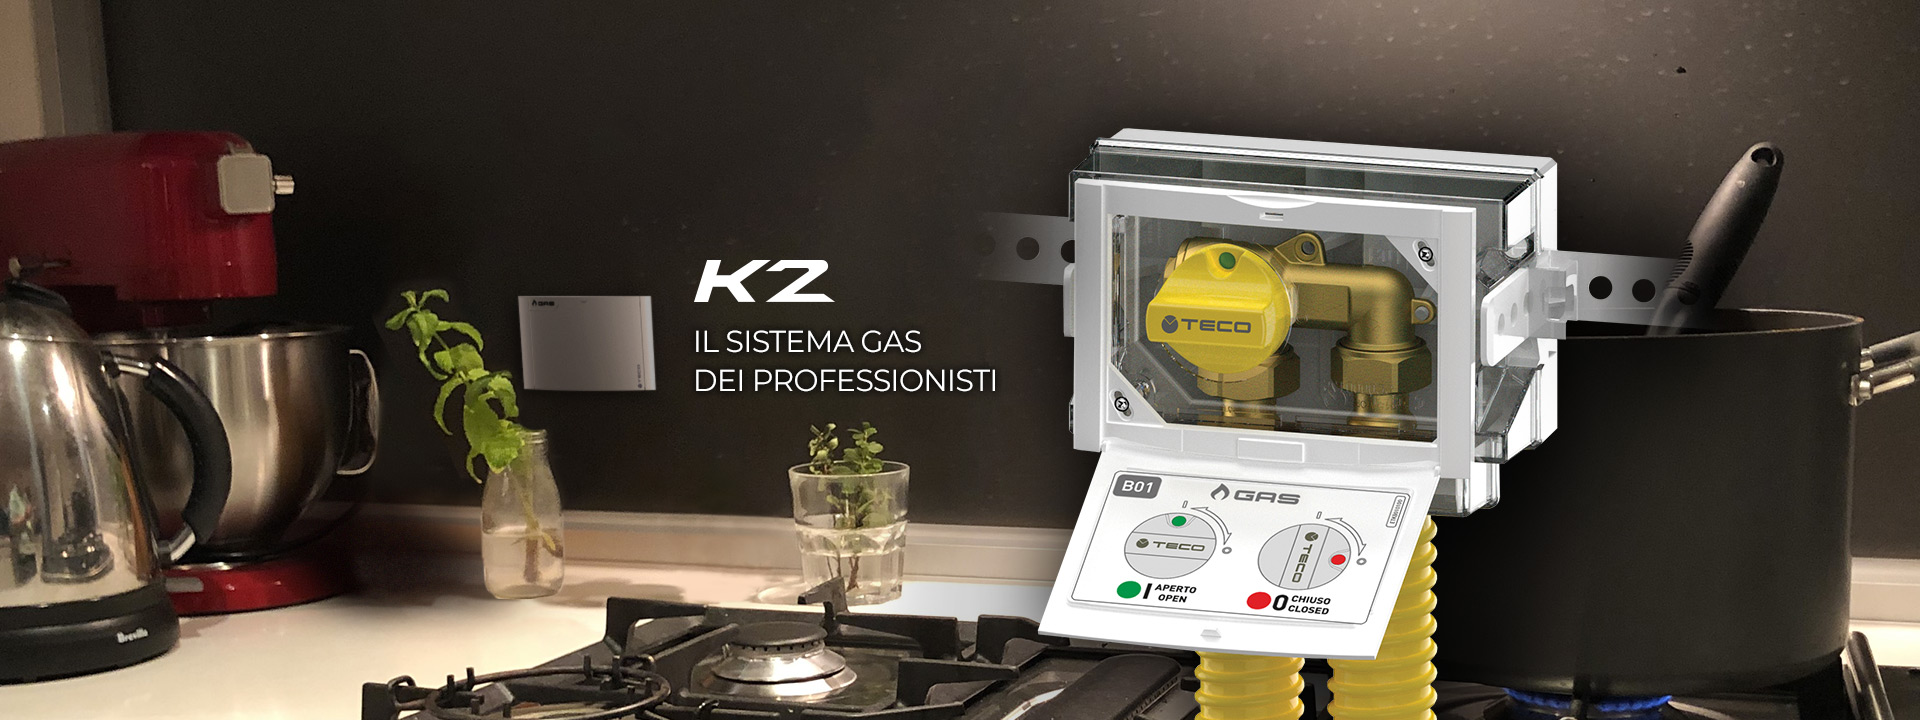 Teco K2.1 valvola gas cucina